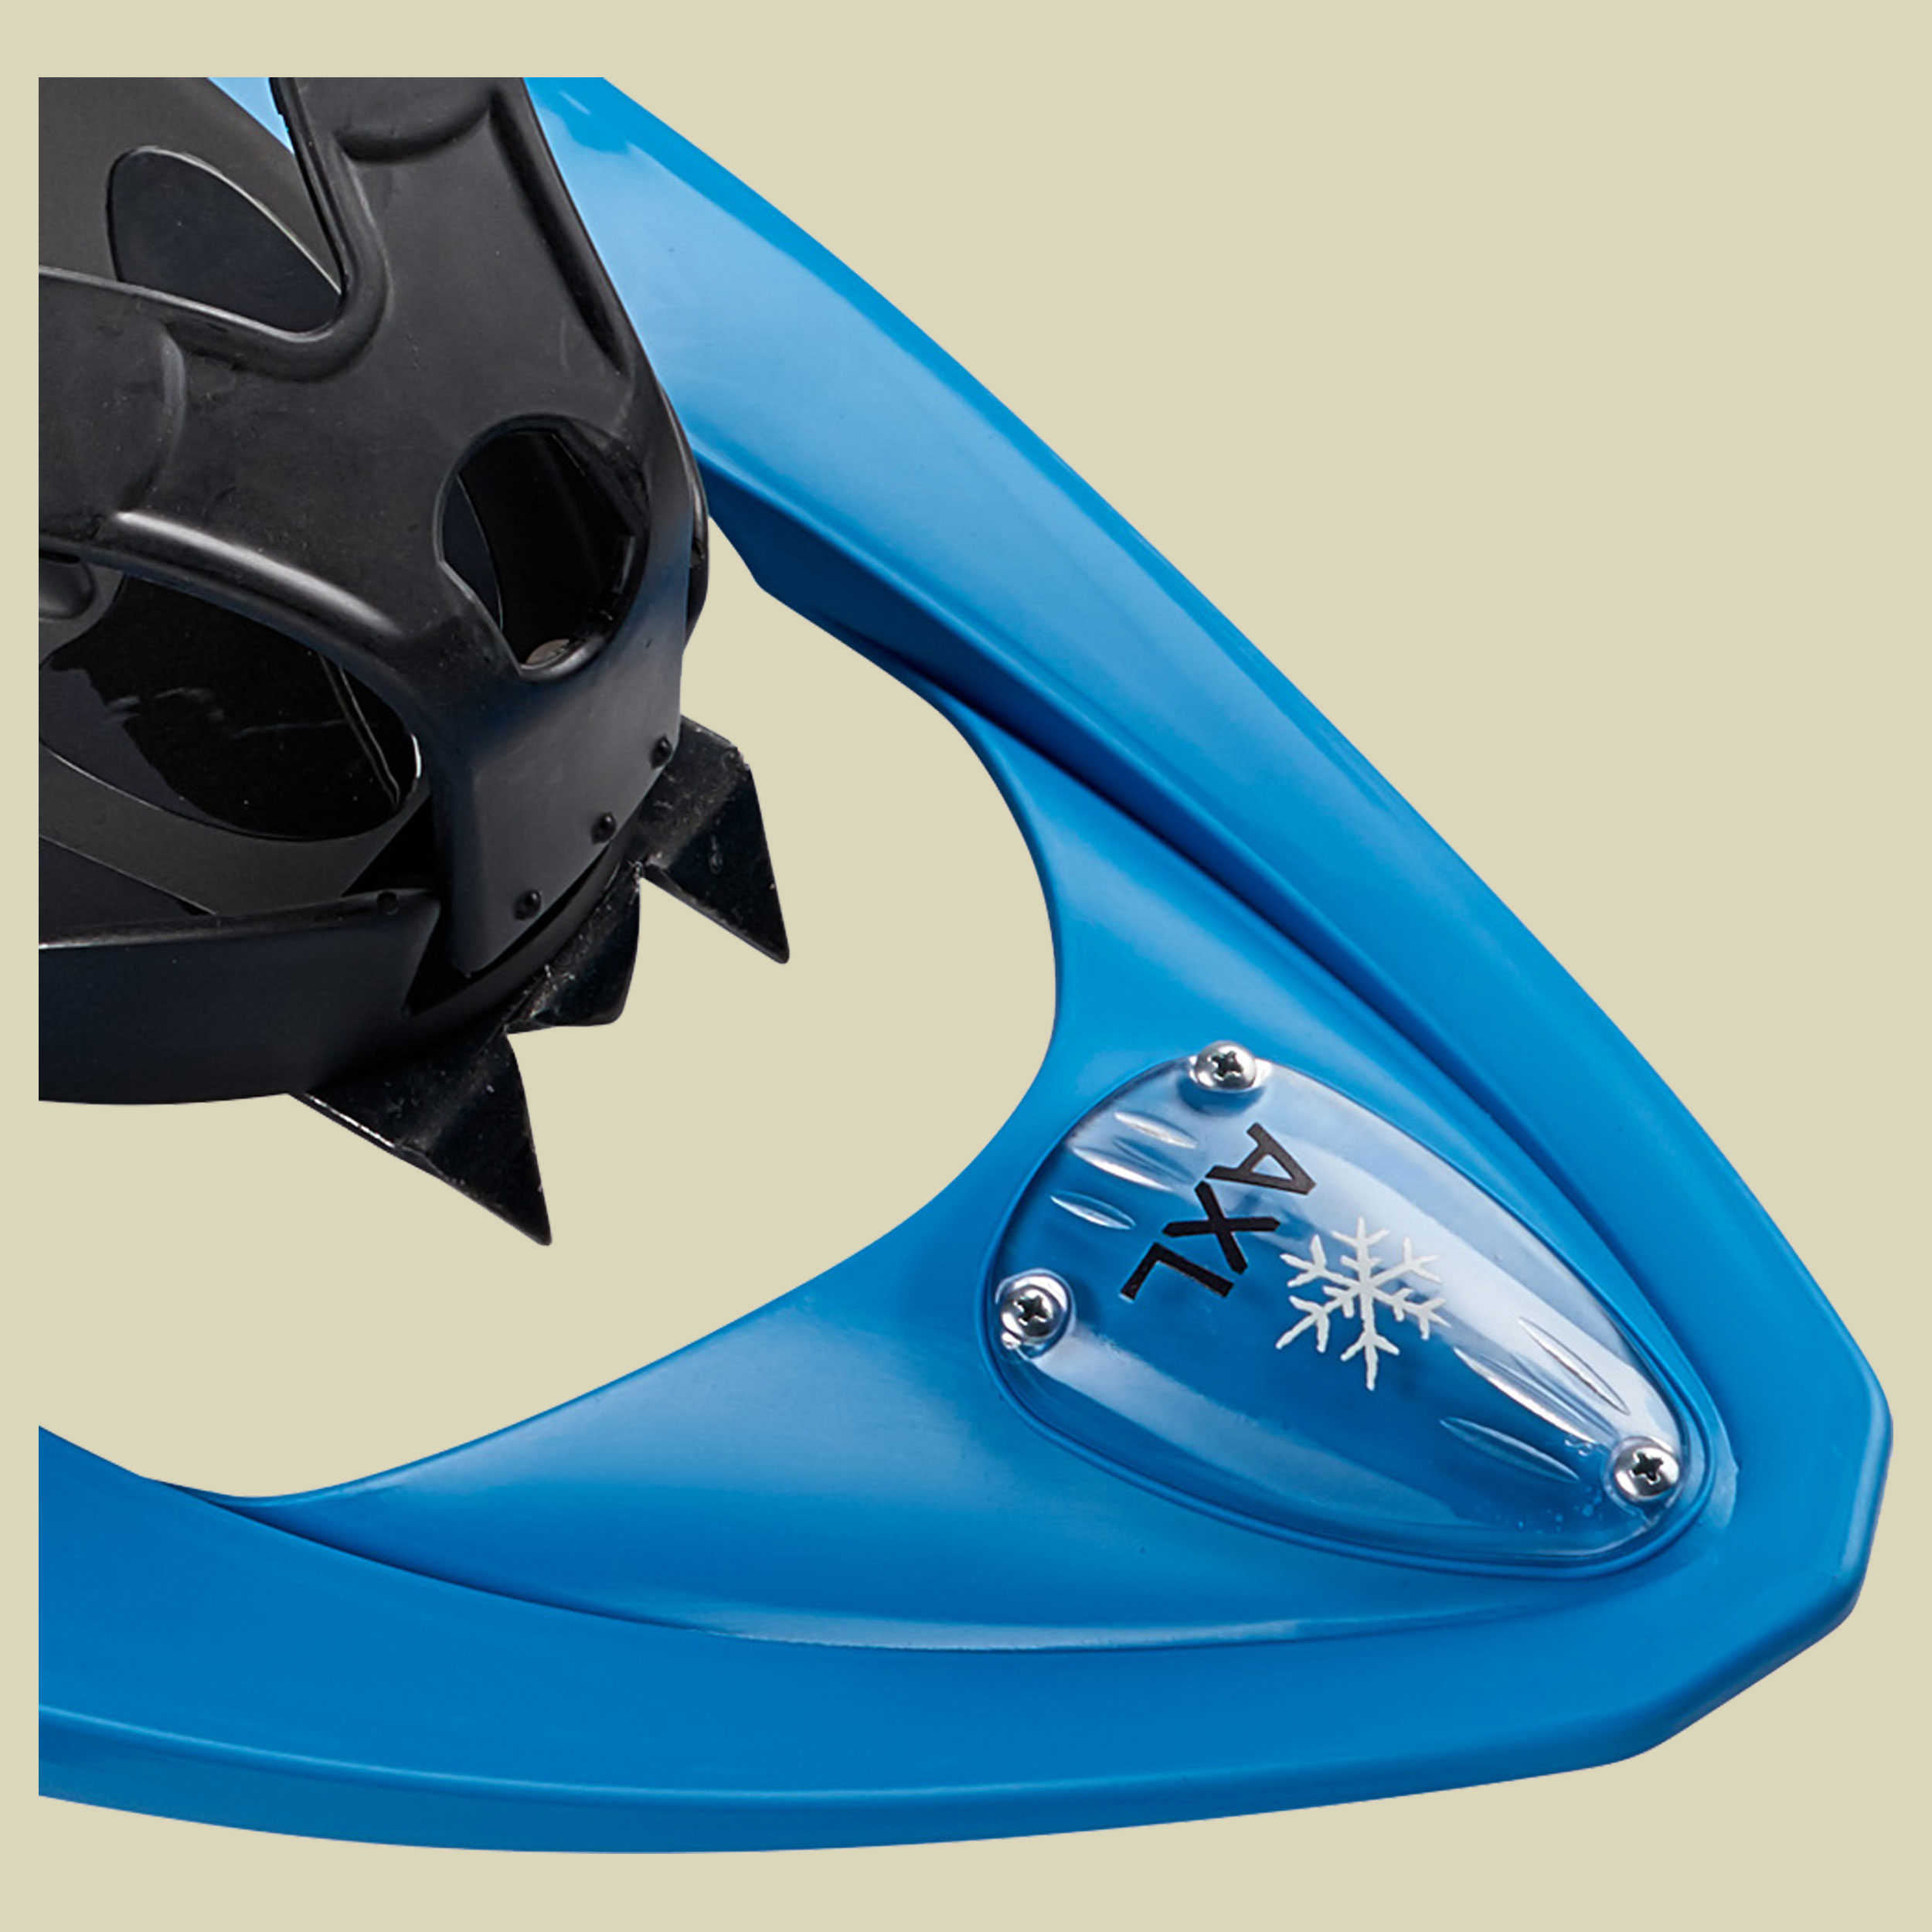 INOOK AXL für Schuhgröße: 34 – 42 Farbe: blau